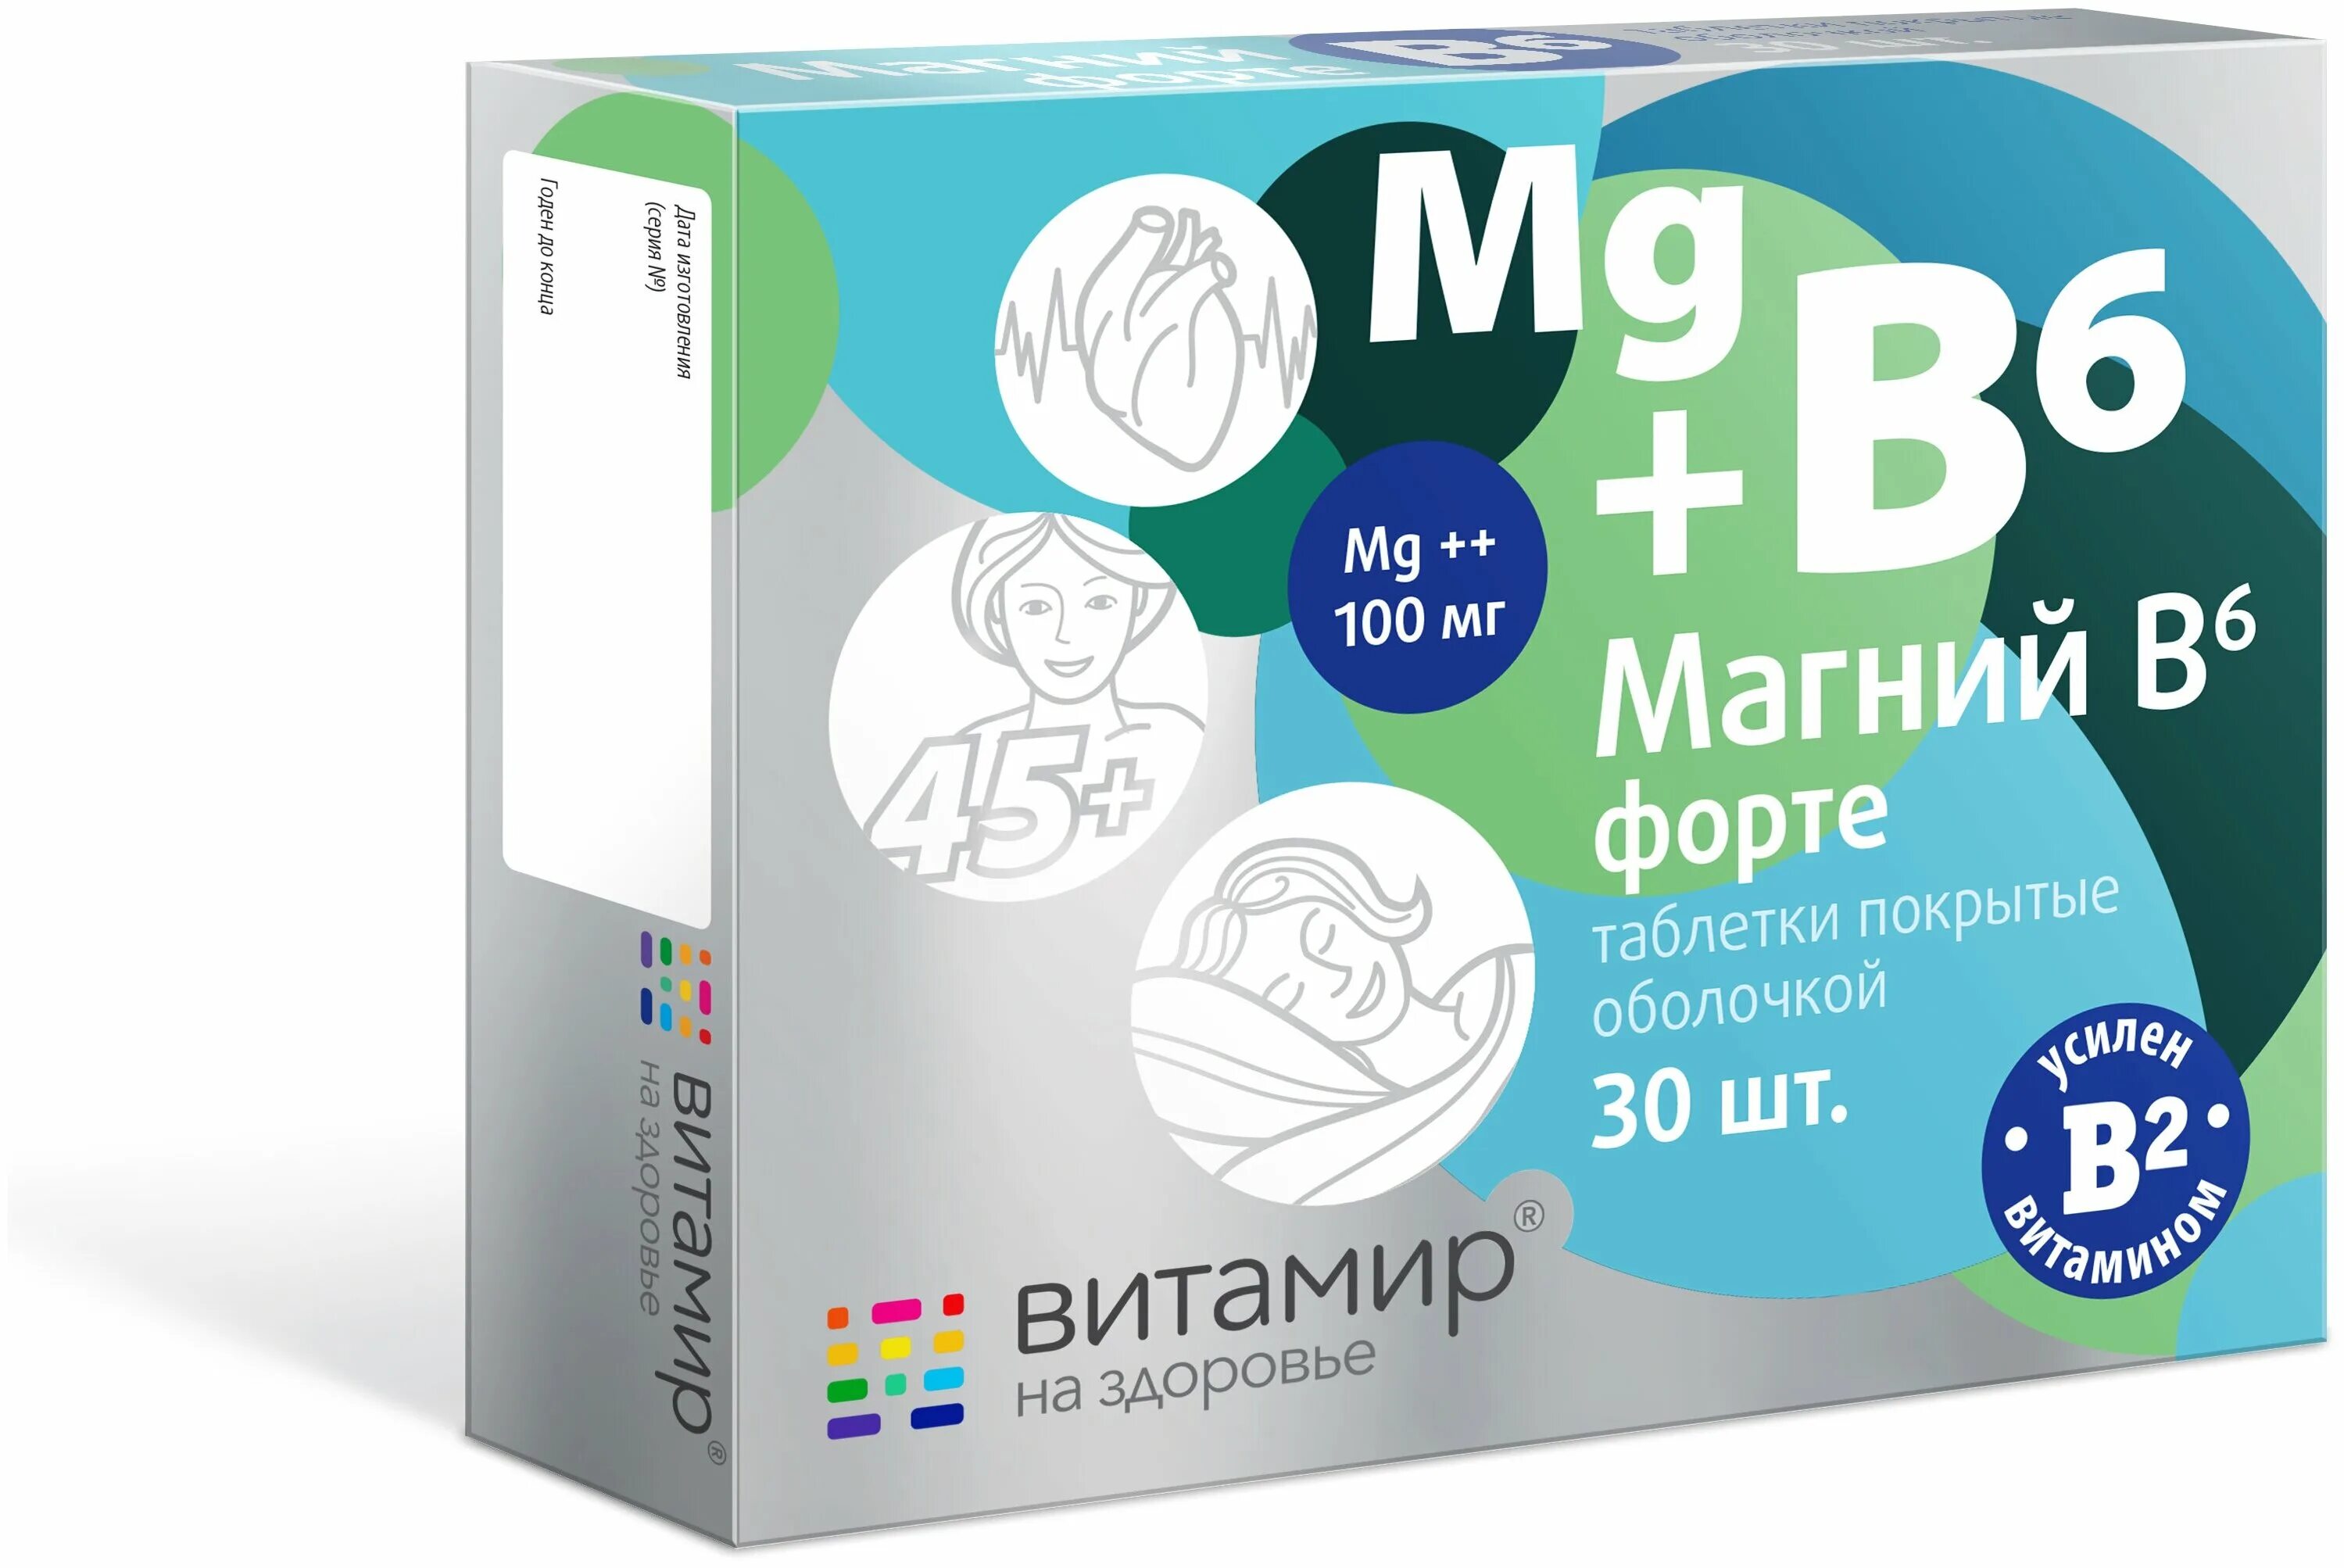 Лекарство магний б 6